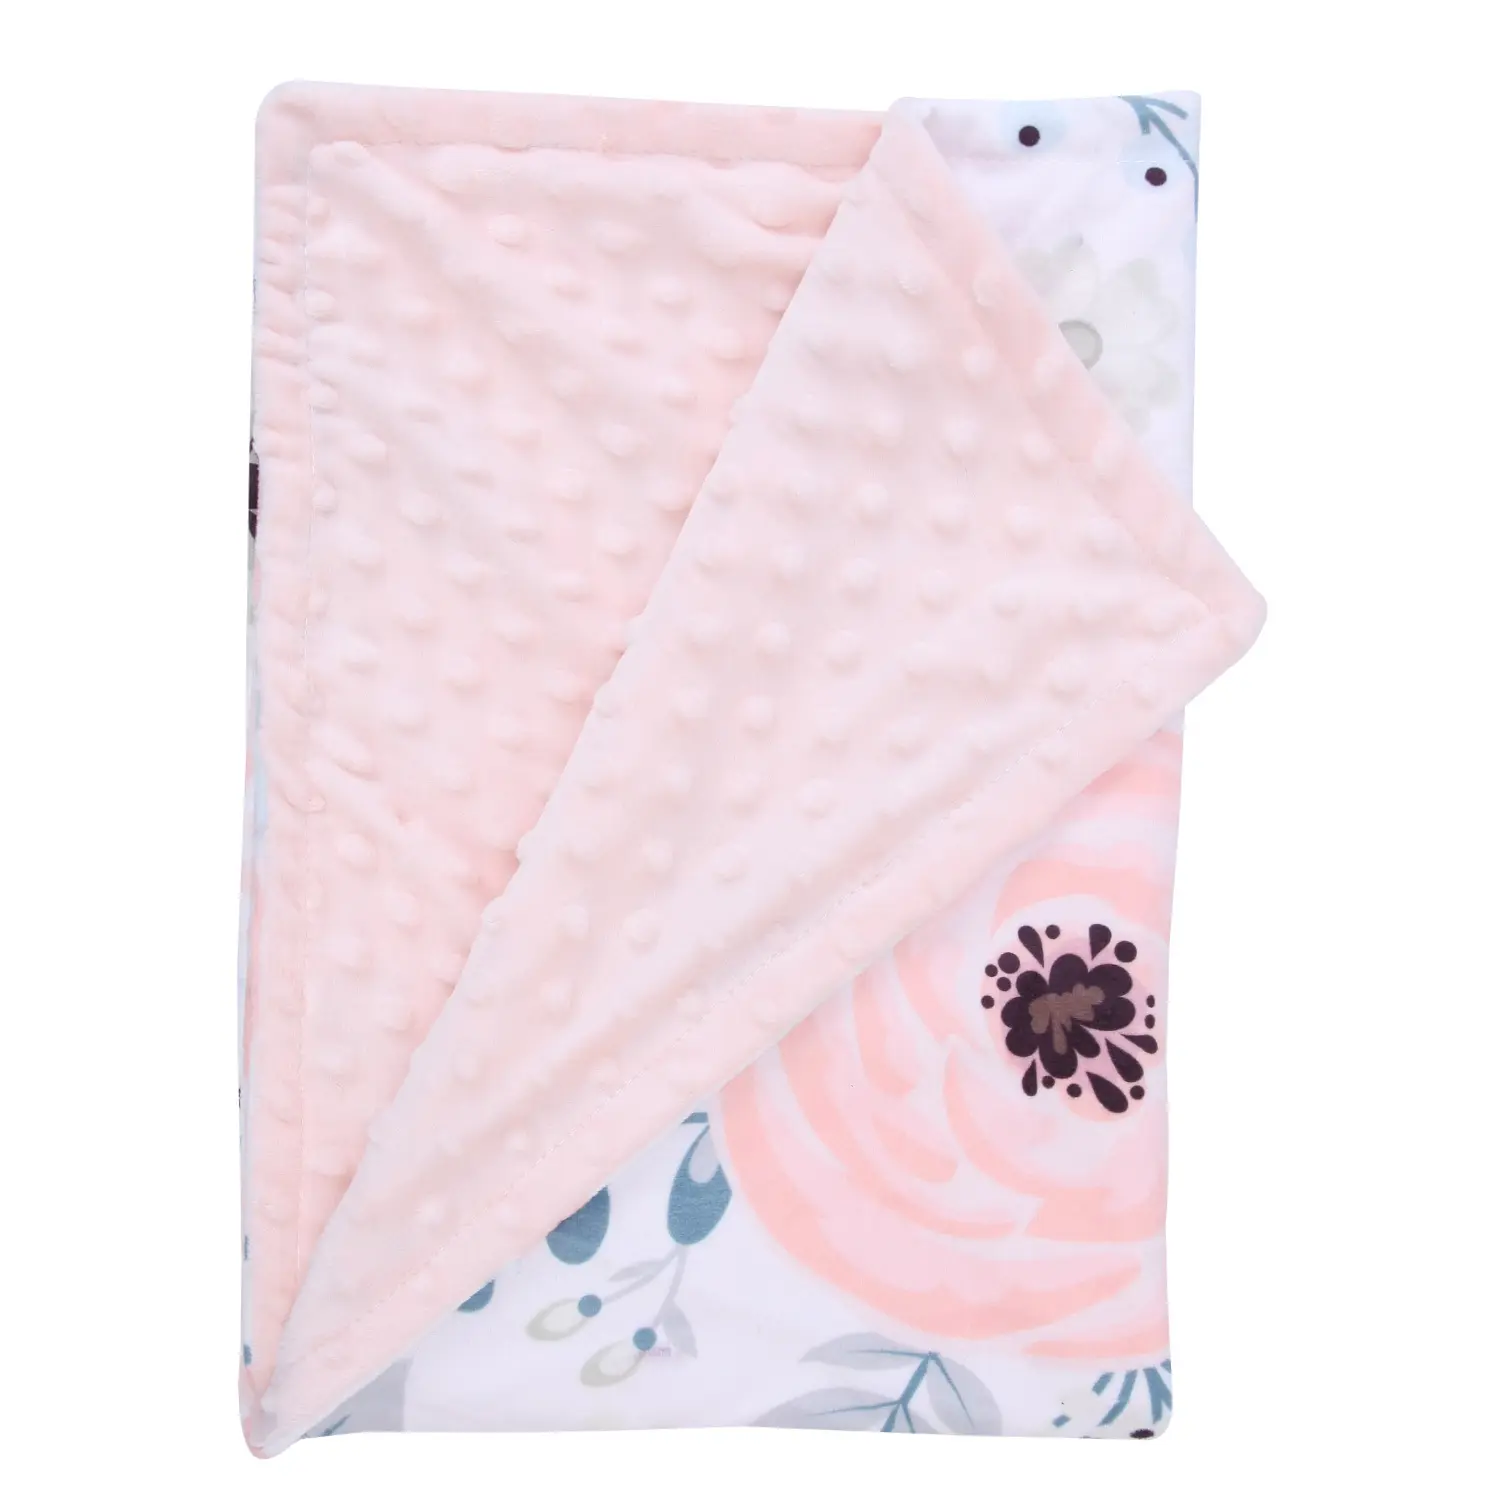 Minky bebek battaniyesi baskı yumuşak Minky kumaş nokta bebek battaniye klima battaniye